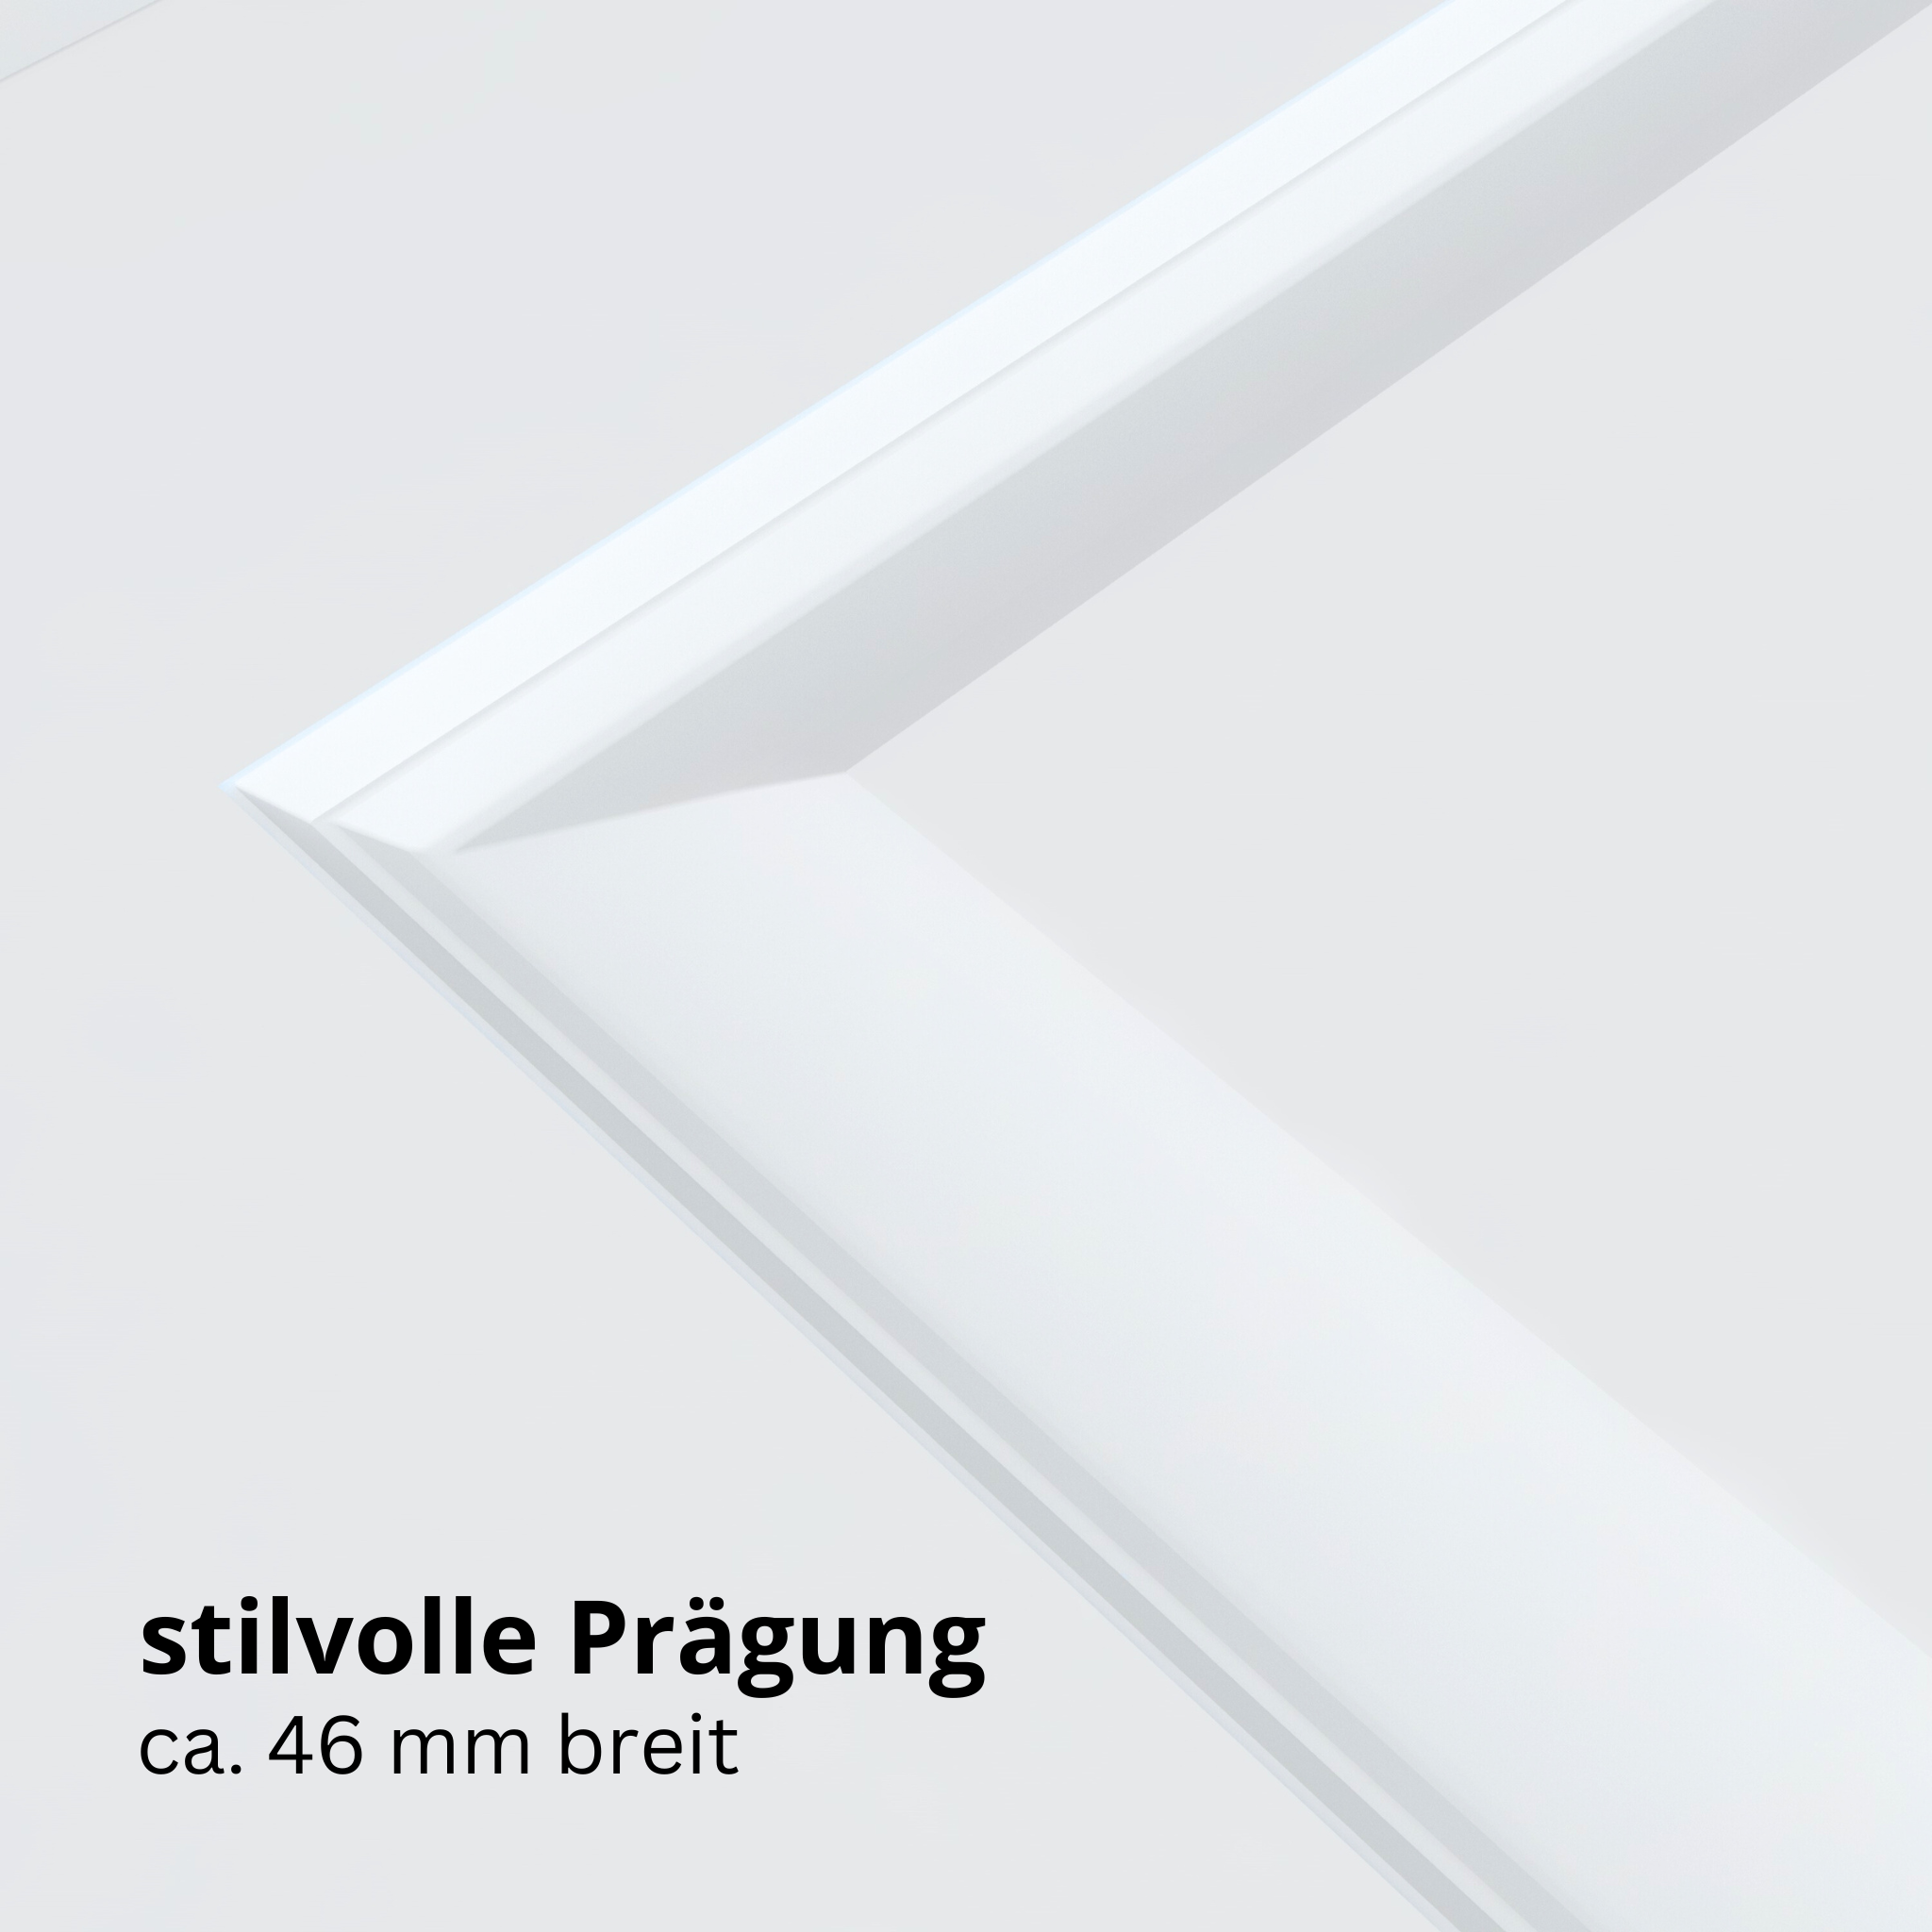 Wohnungseingangstür mit Zarge brillant-weiß 2 Kassetten Designkante SK1 / KK3 - Modell Stiltür K23